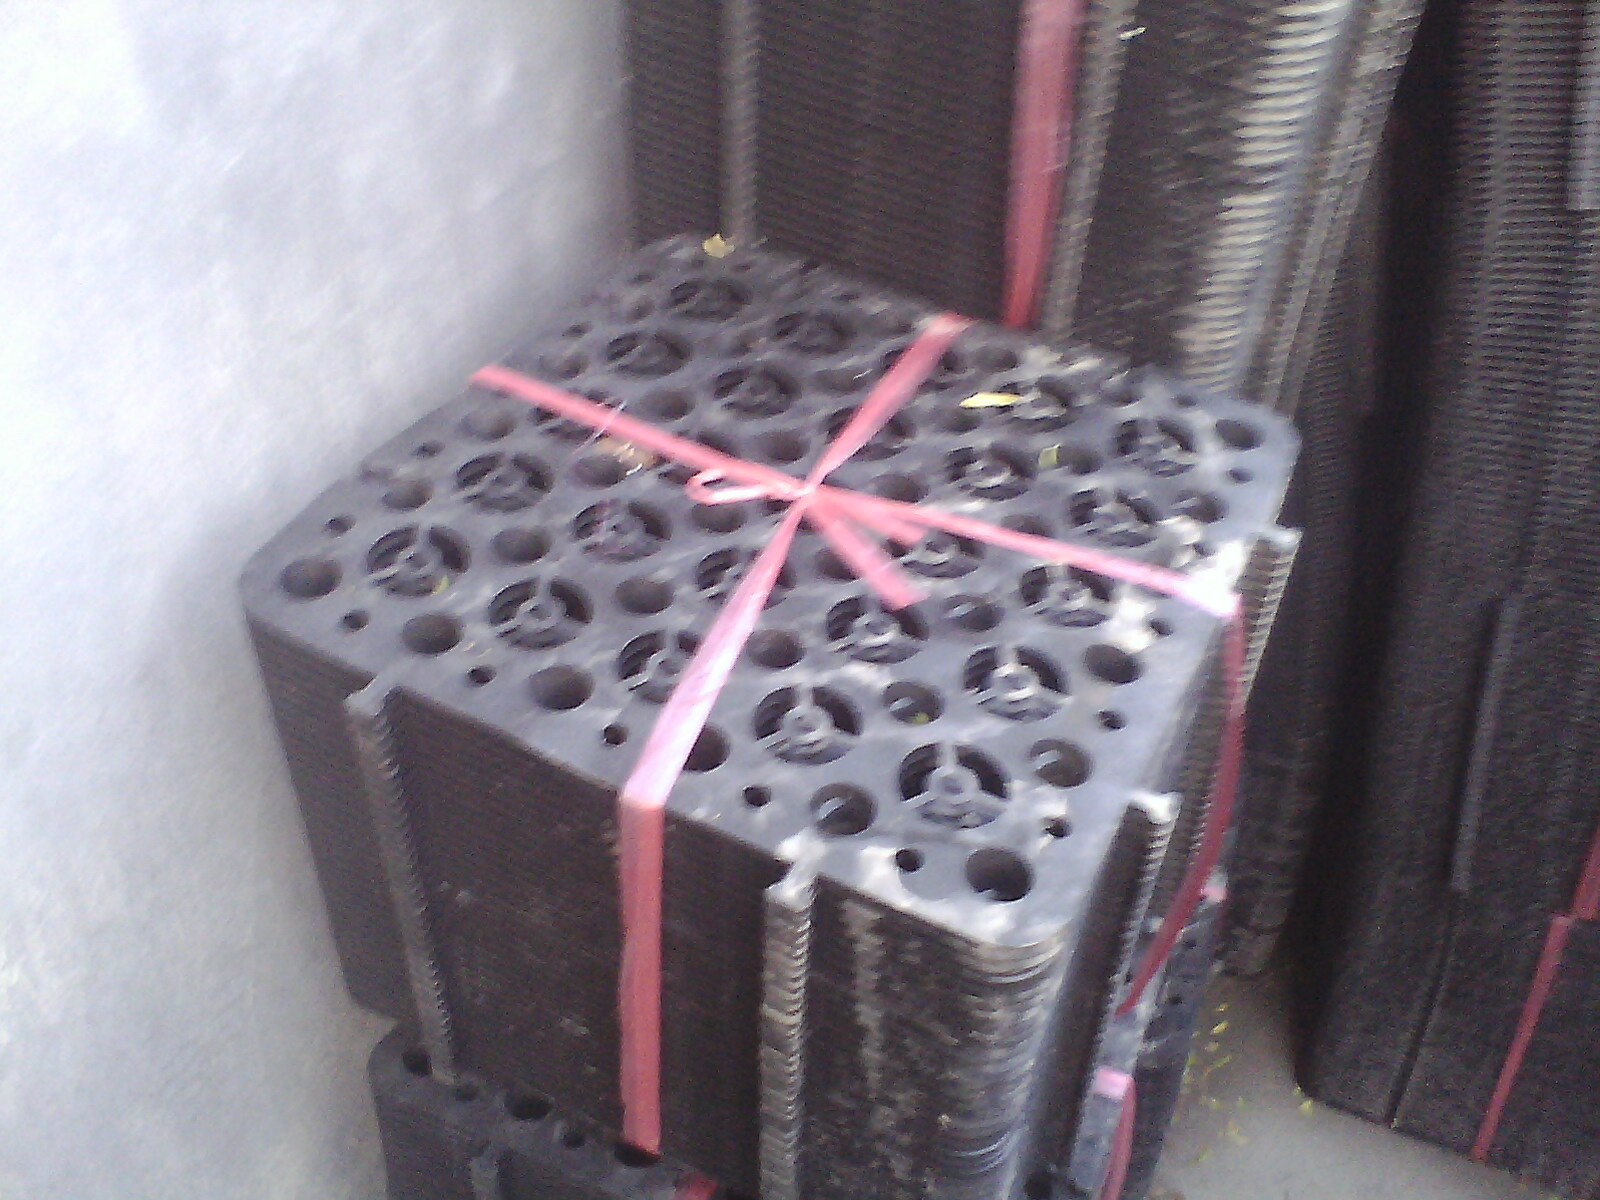 郴州车库种植排水板塑料夹层板厂家销售